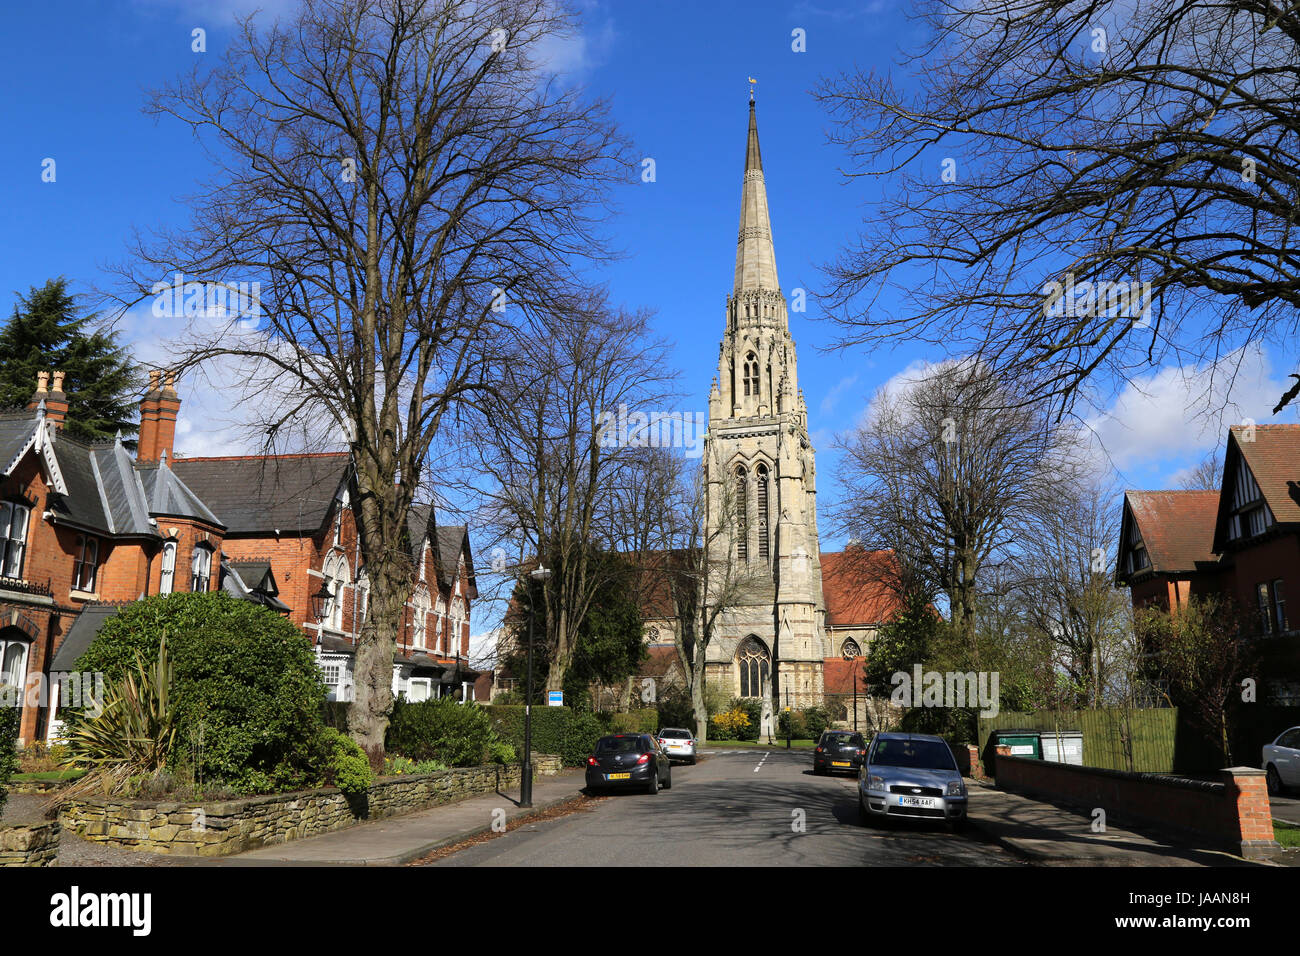 Ein Blick auf die Kirche St. Augustine, eine denkmalgeschützte, historische Gebäude in Edgbaston, Birmingham, UK. Stockfoto